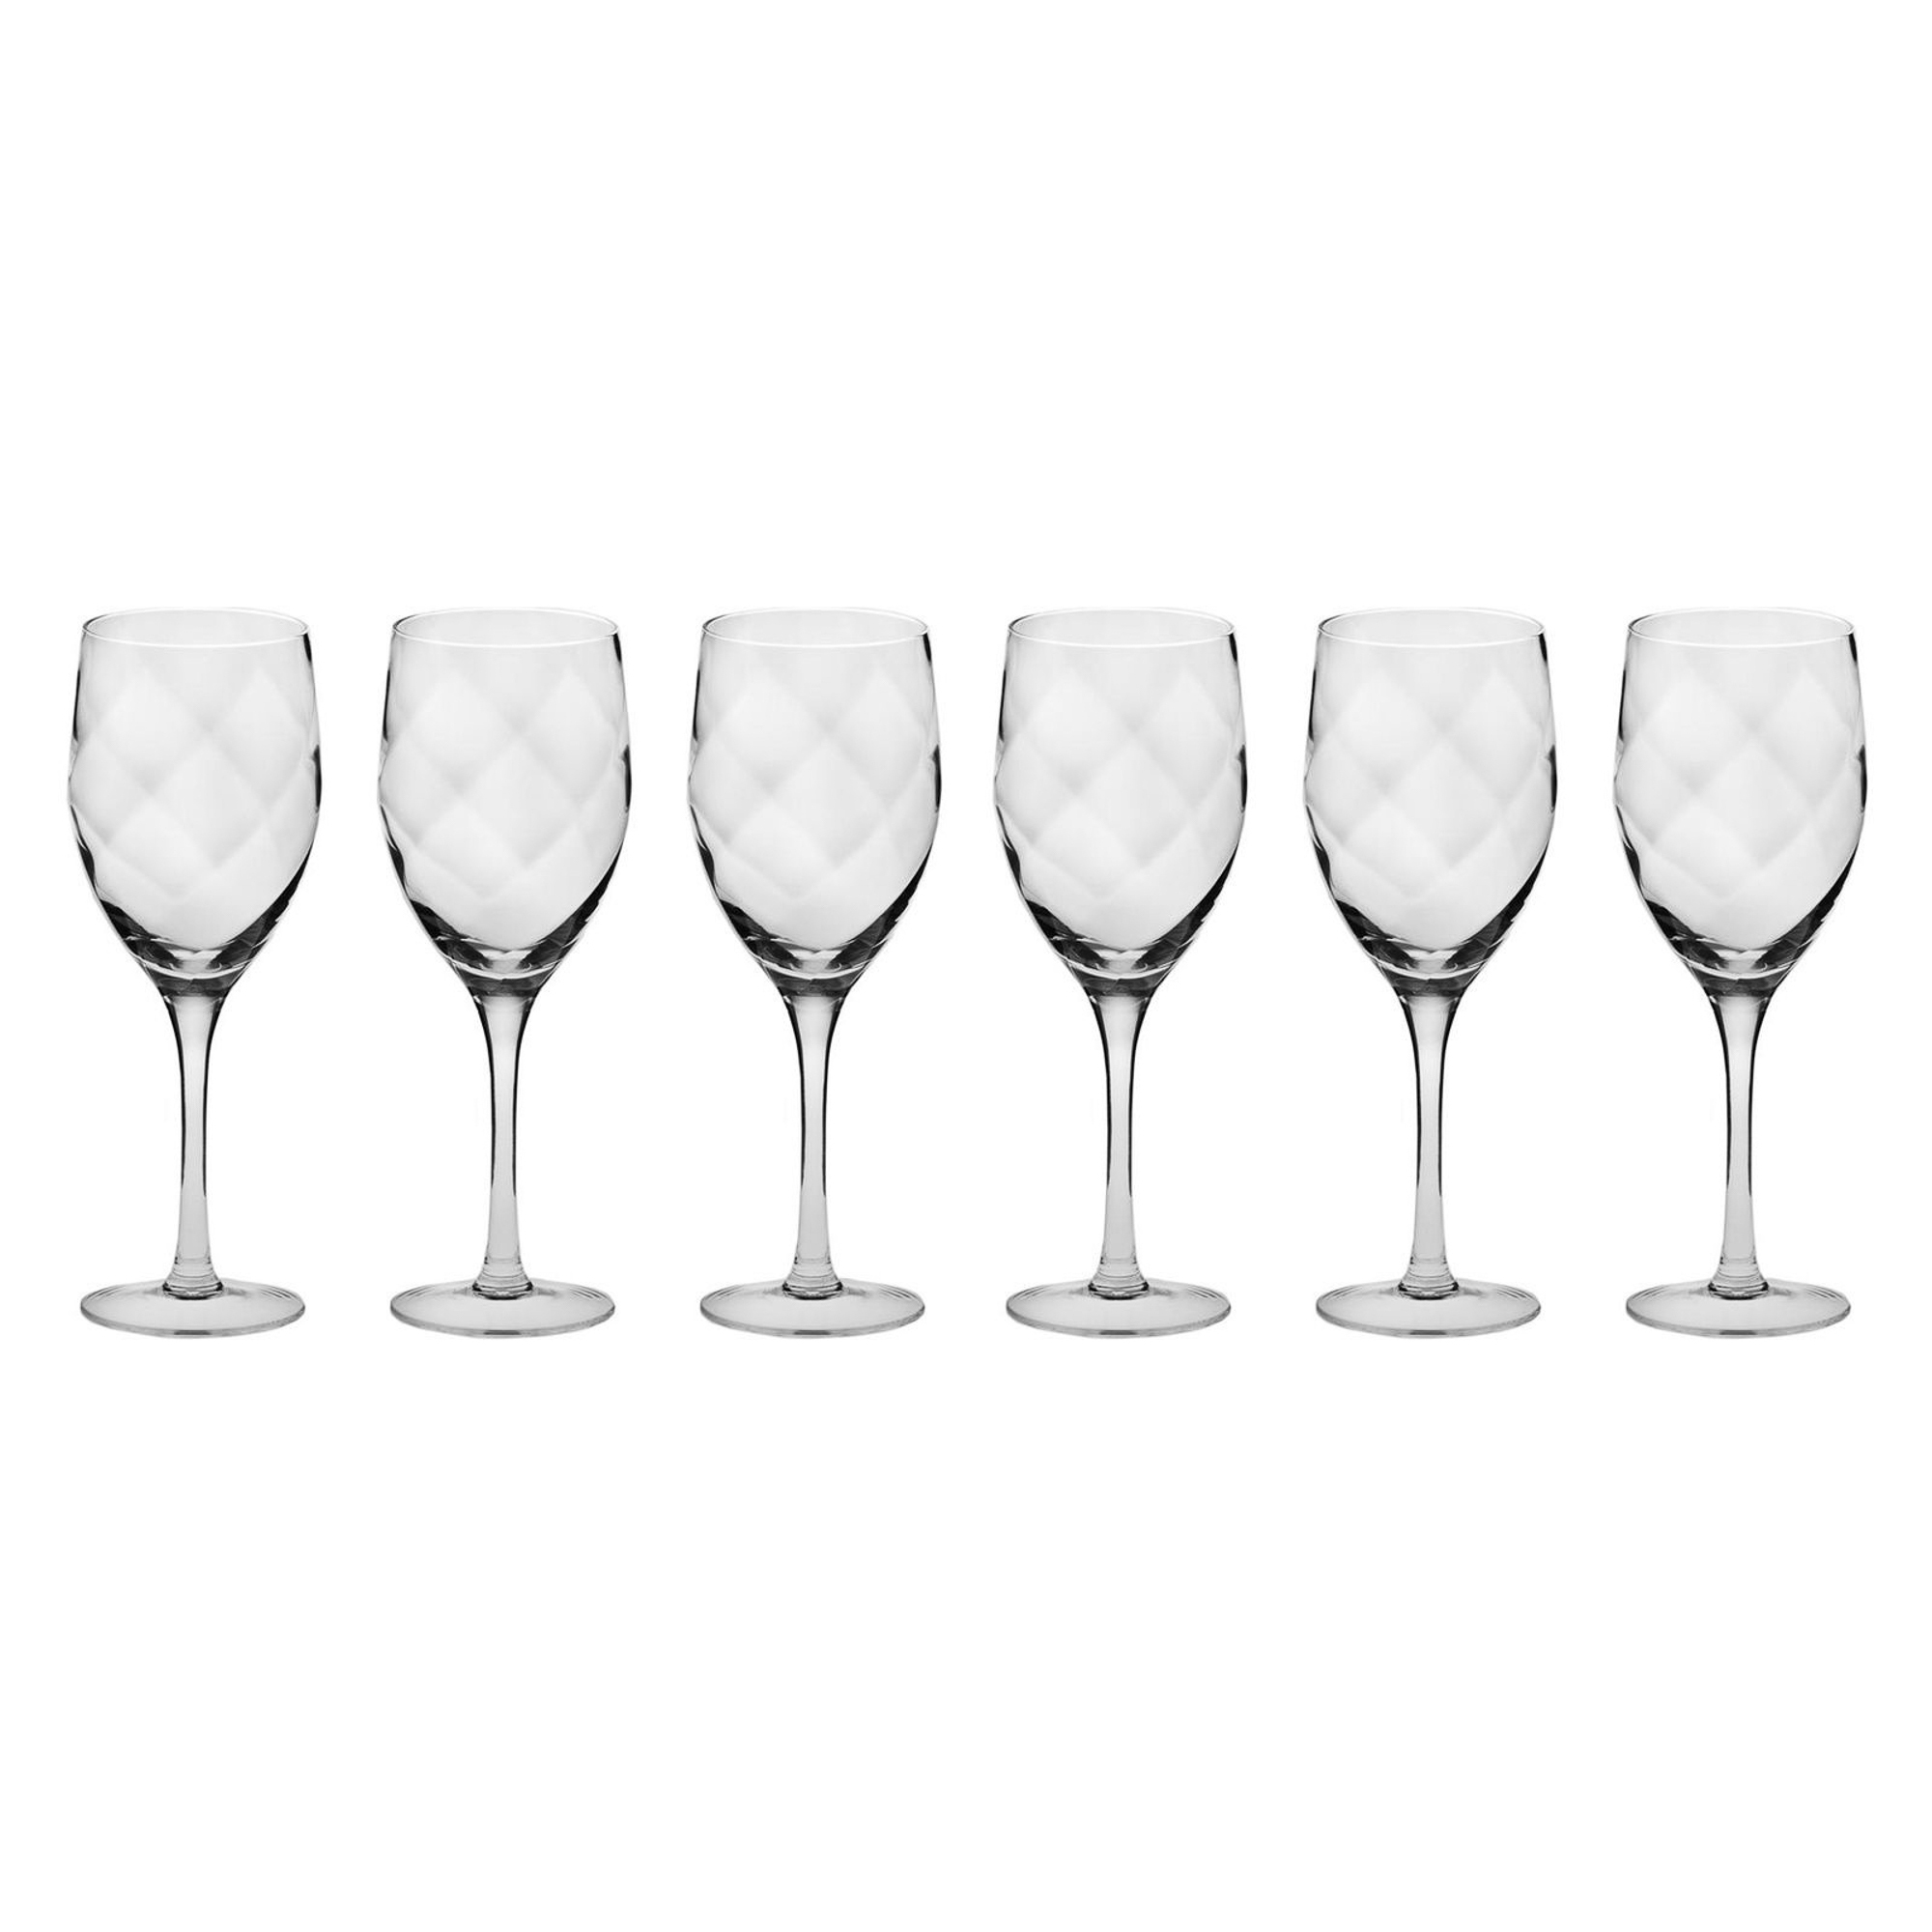 Набор из 6 бокалов для белого вина 270мл Krosno романтика набор бокалов для белого вина krosno романтика 270 мл 6 шт